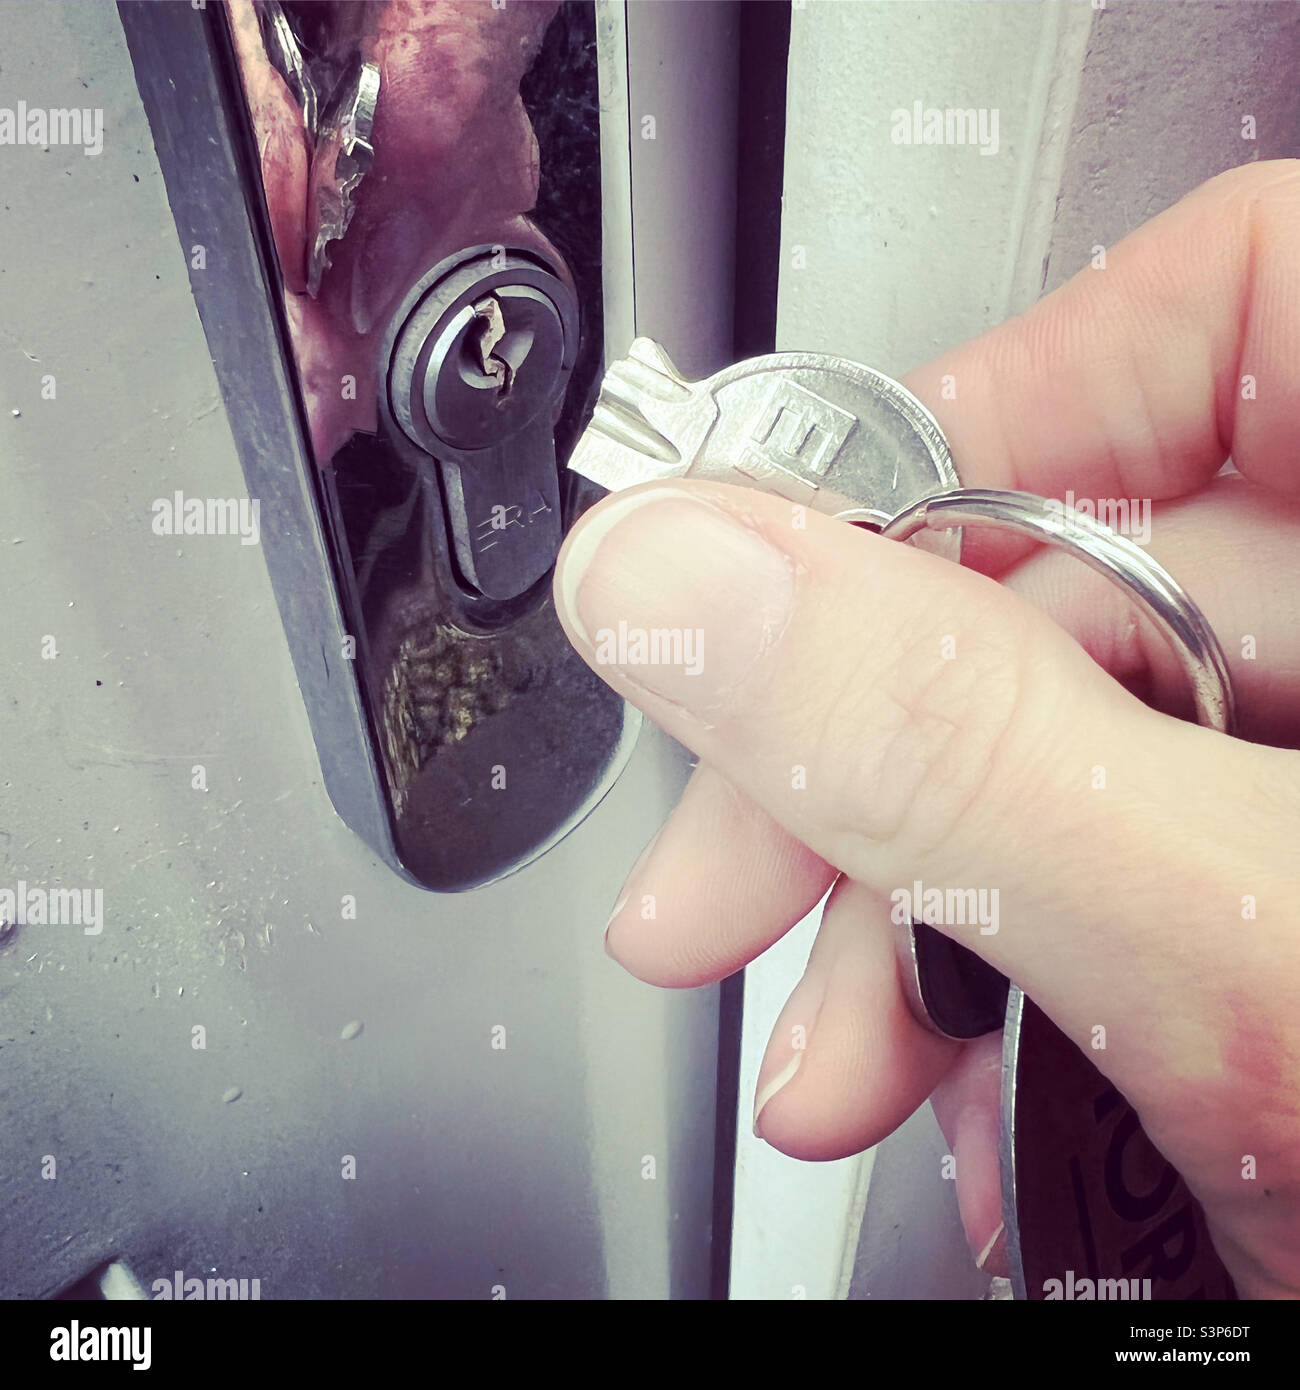 Broken key in door lock Stock Photo